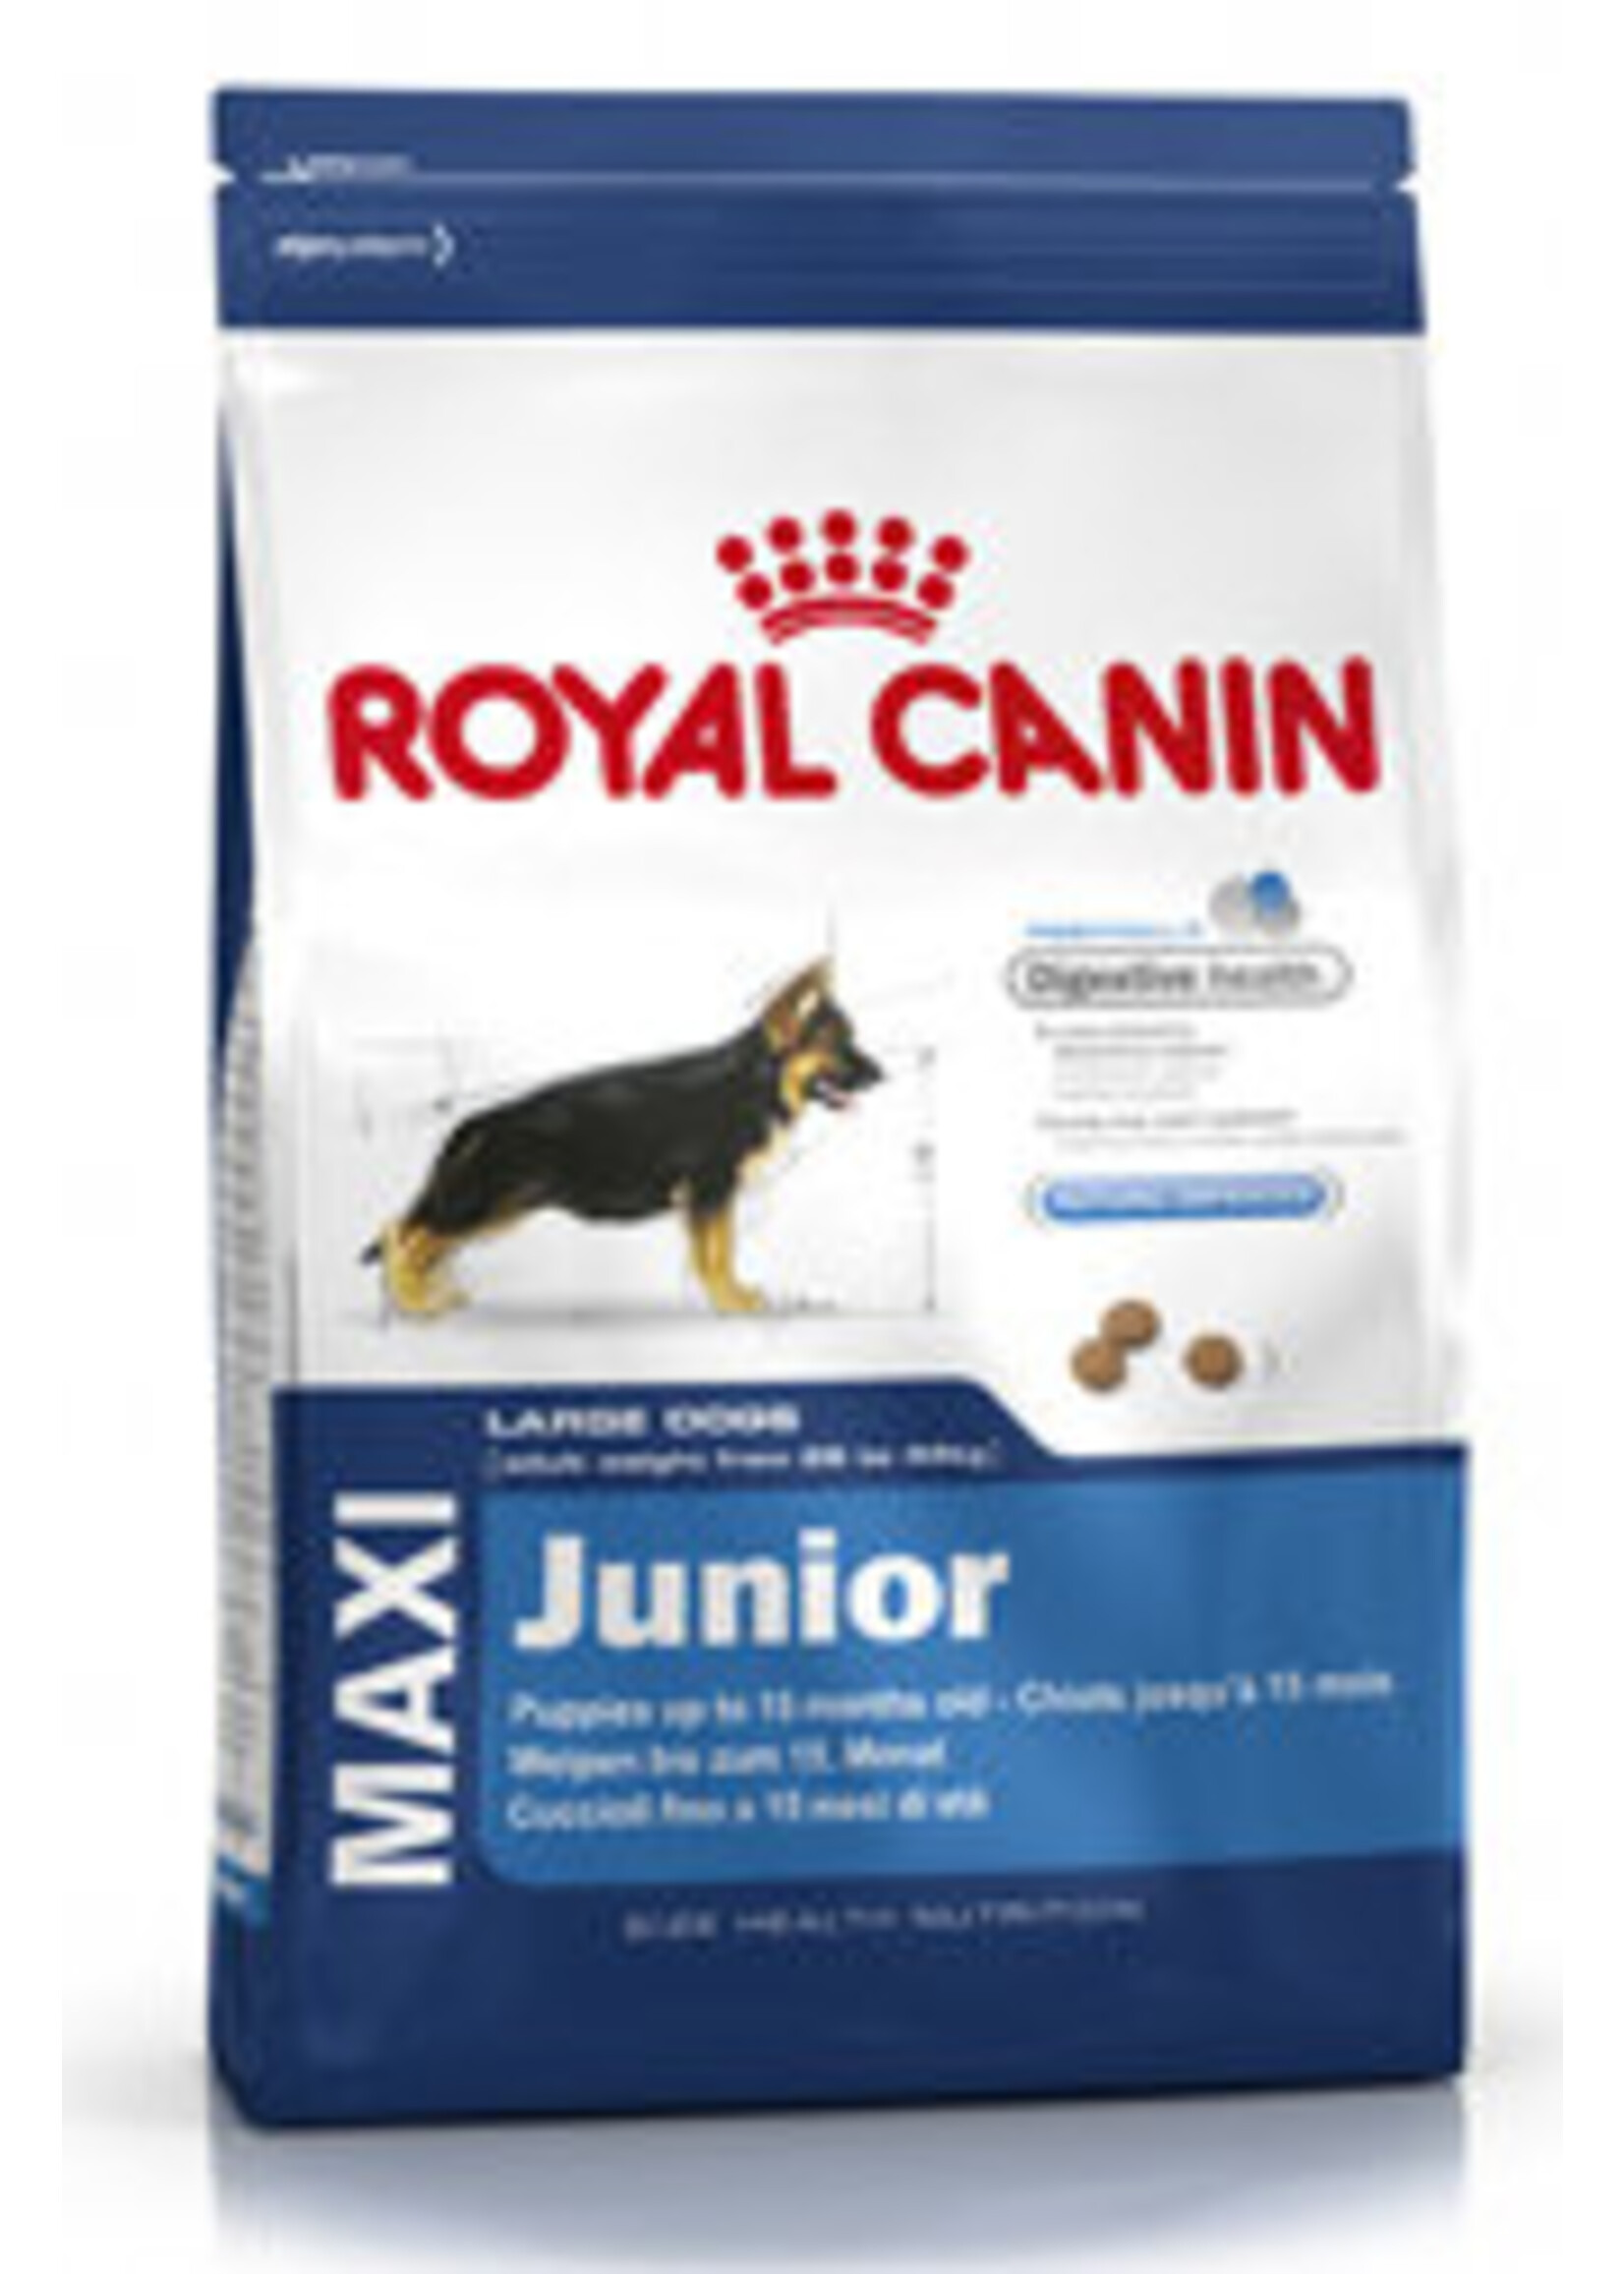 Royal Canin Royal Canin Shn Maxi Junior Canine 4kg